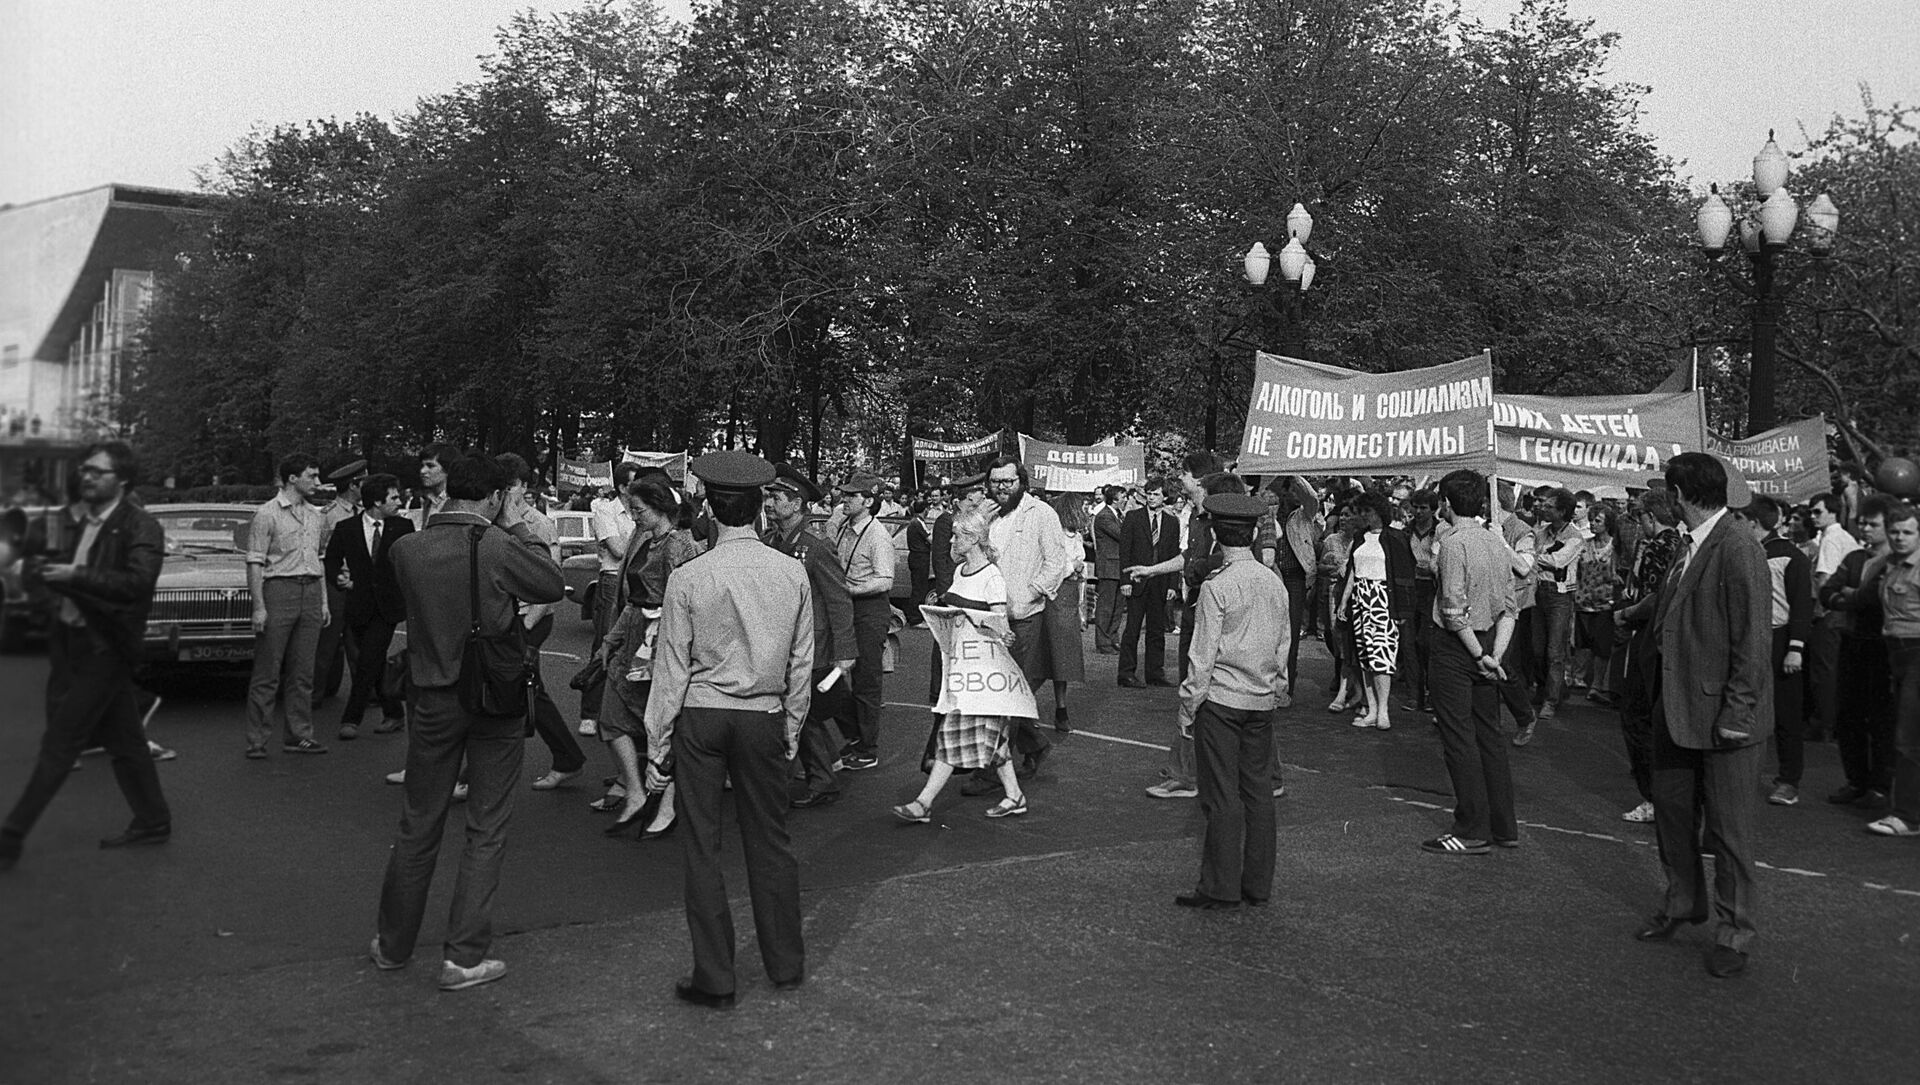 Антиалкогольная демонстрация на Пушкинской площади в Москве. - Sputnik Абхазия, 1920, 16.05.2021